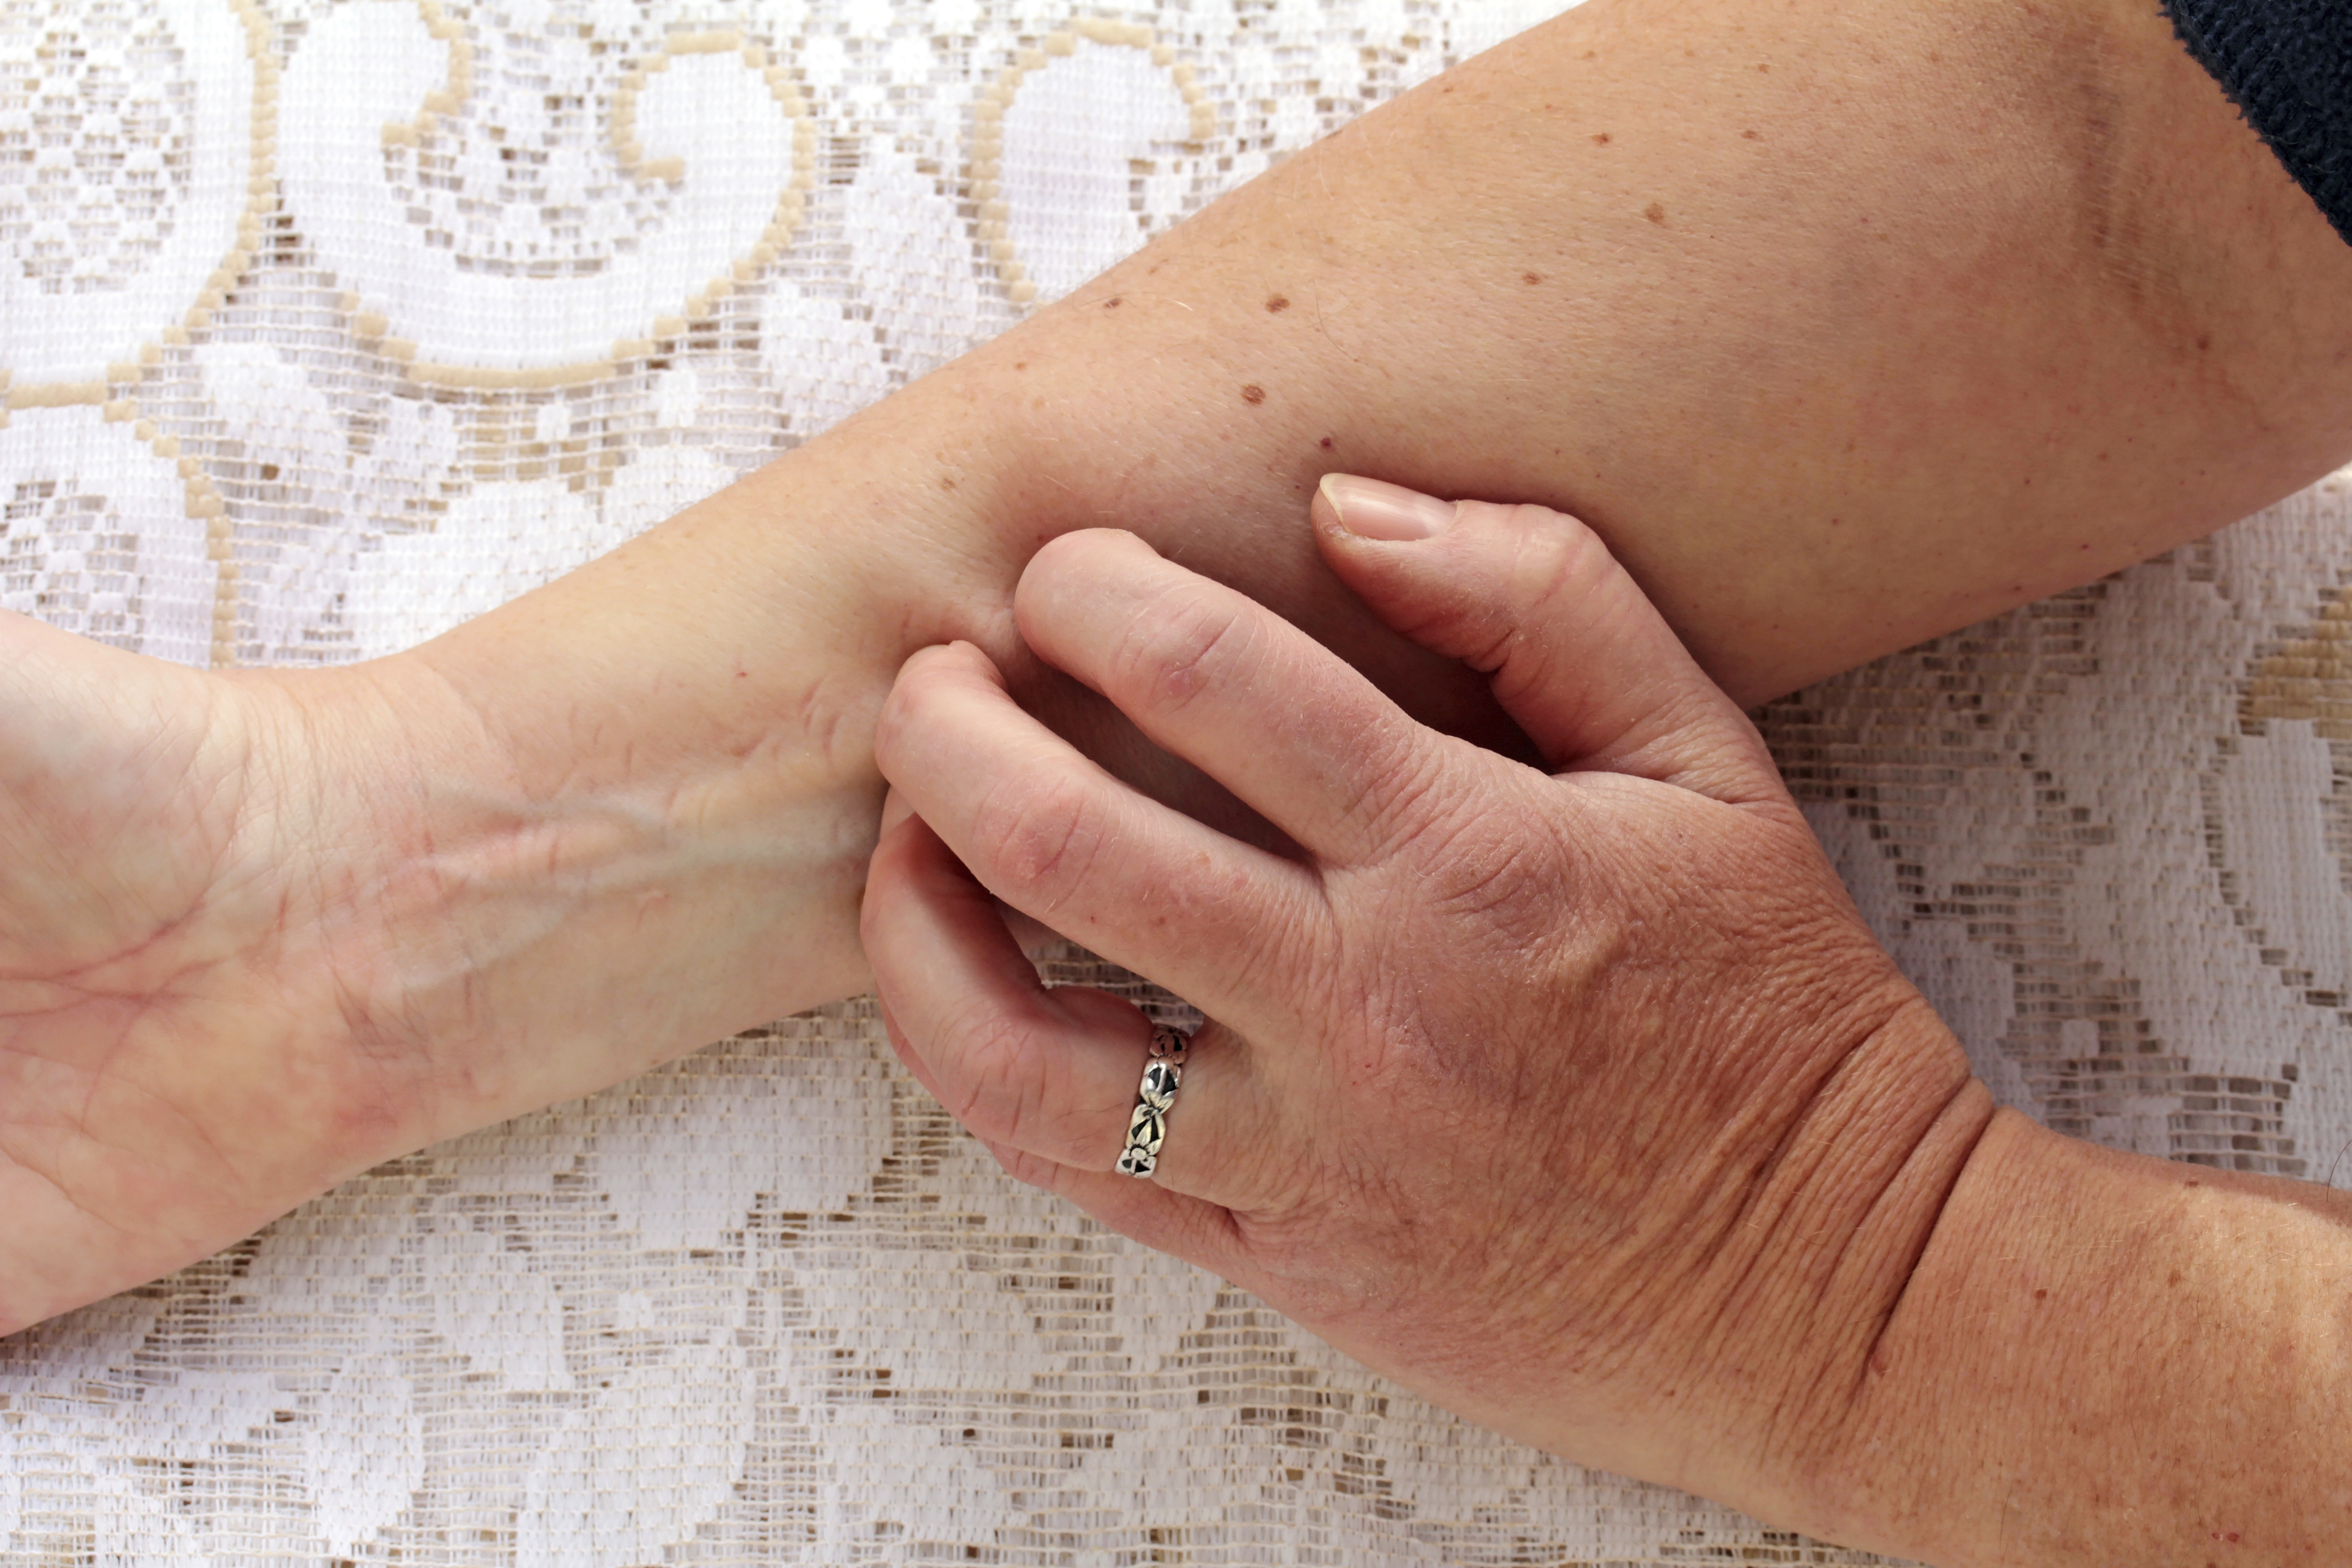 How do you prevent skin rashes?